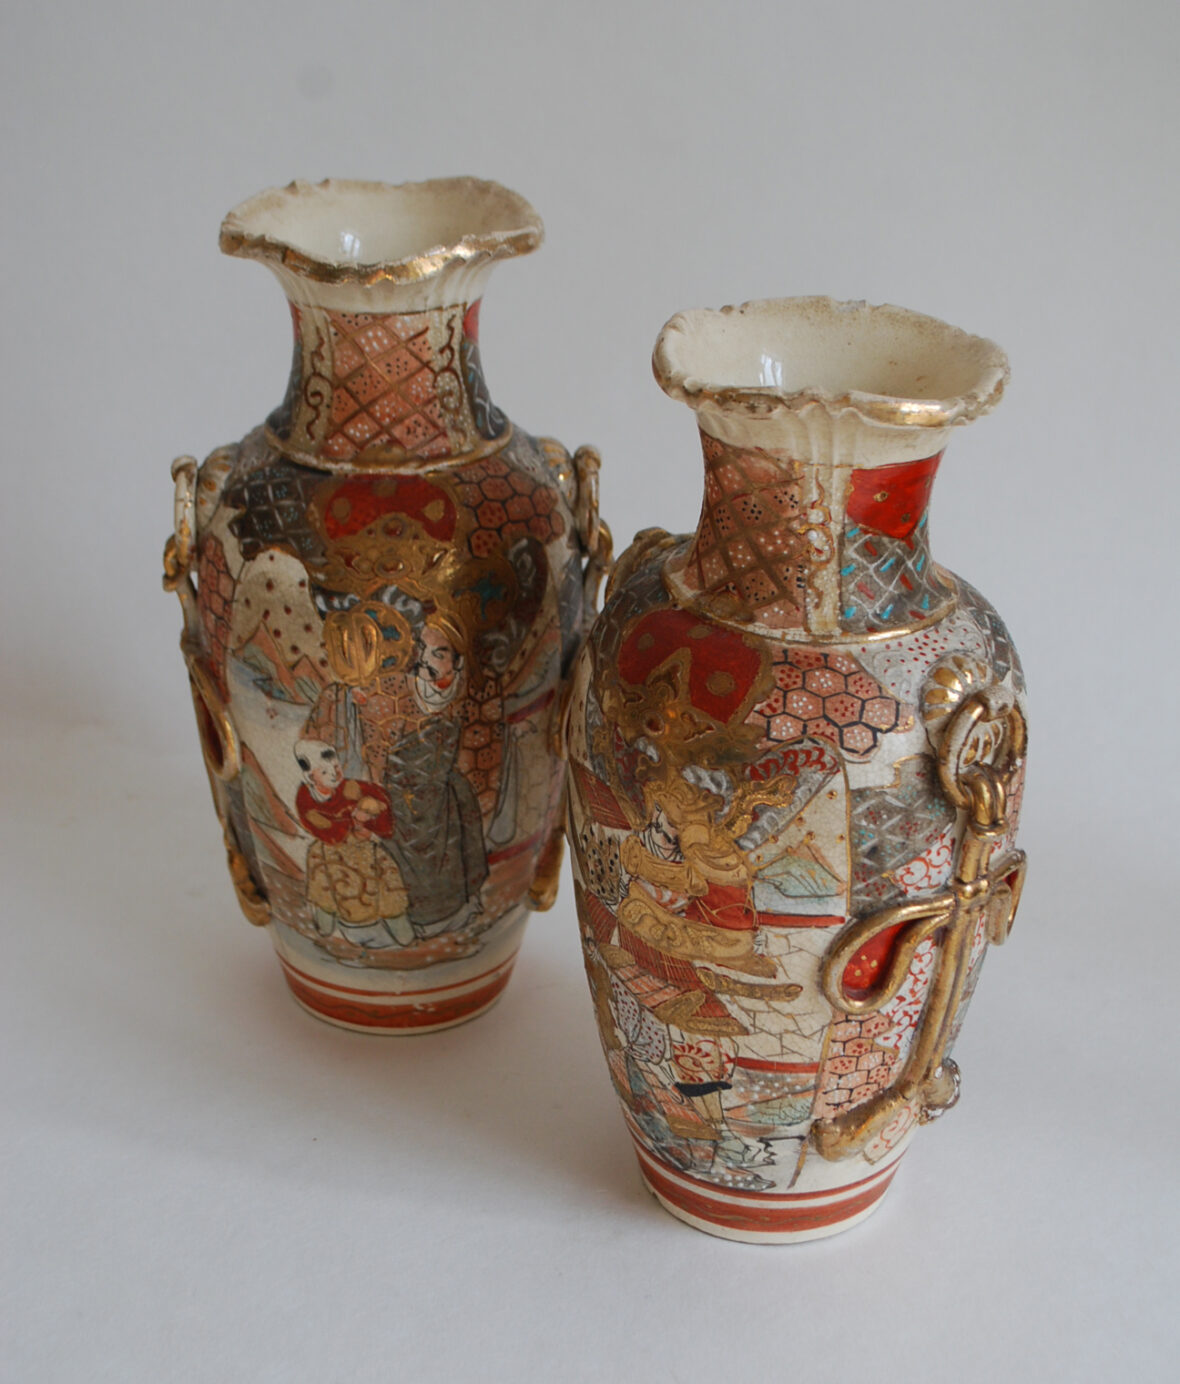 Paire de vase balustres à col mouvementé à décor de scènes animées en faïence de Satzuma. Japon, XIXe-XXe siècle.